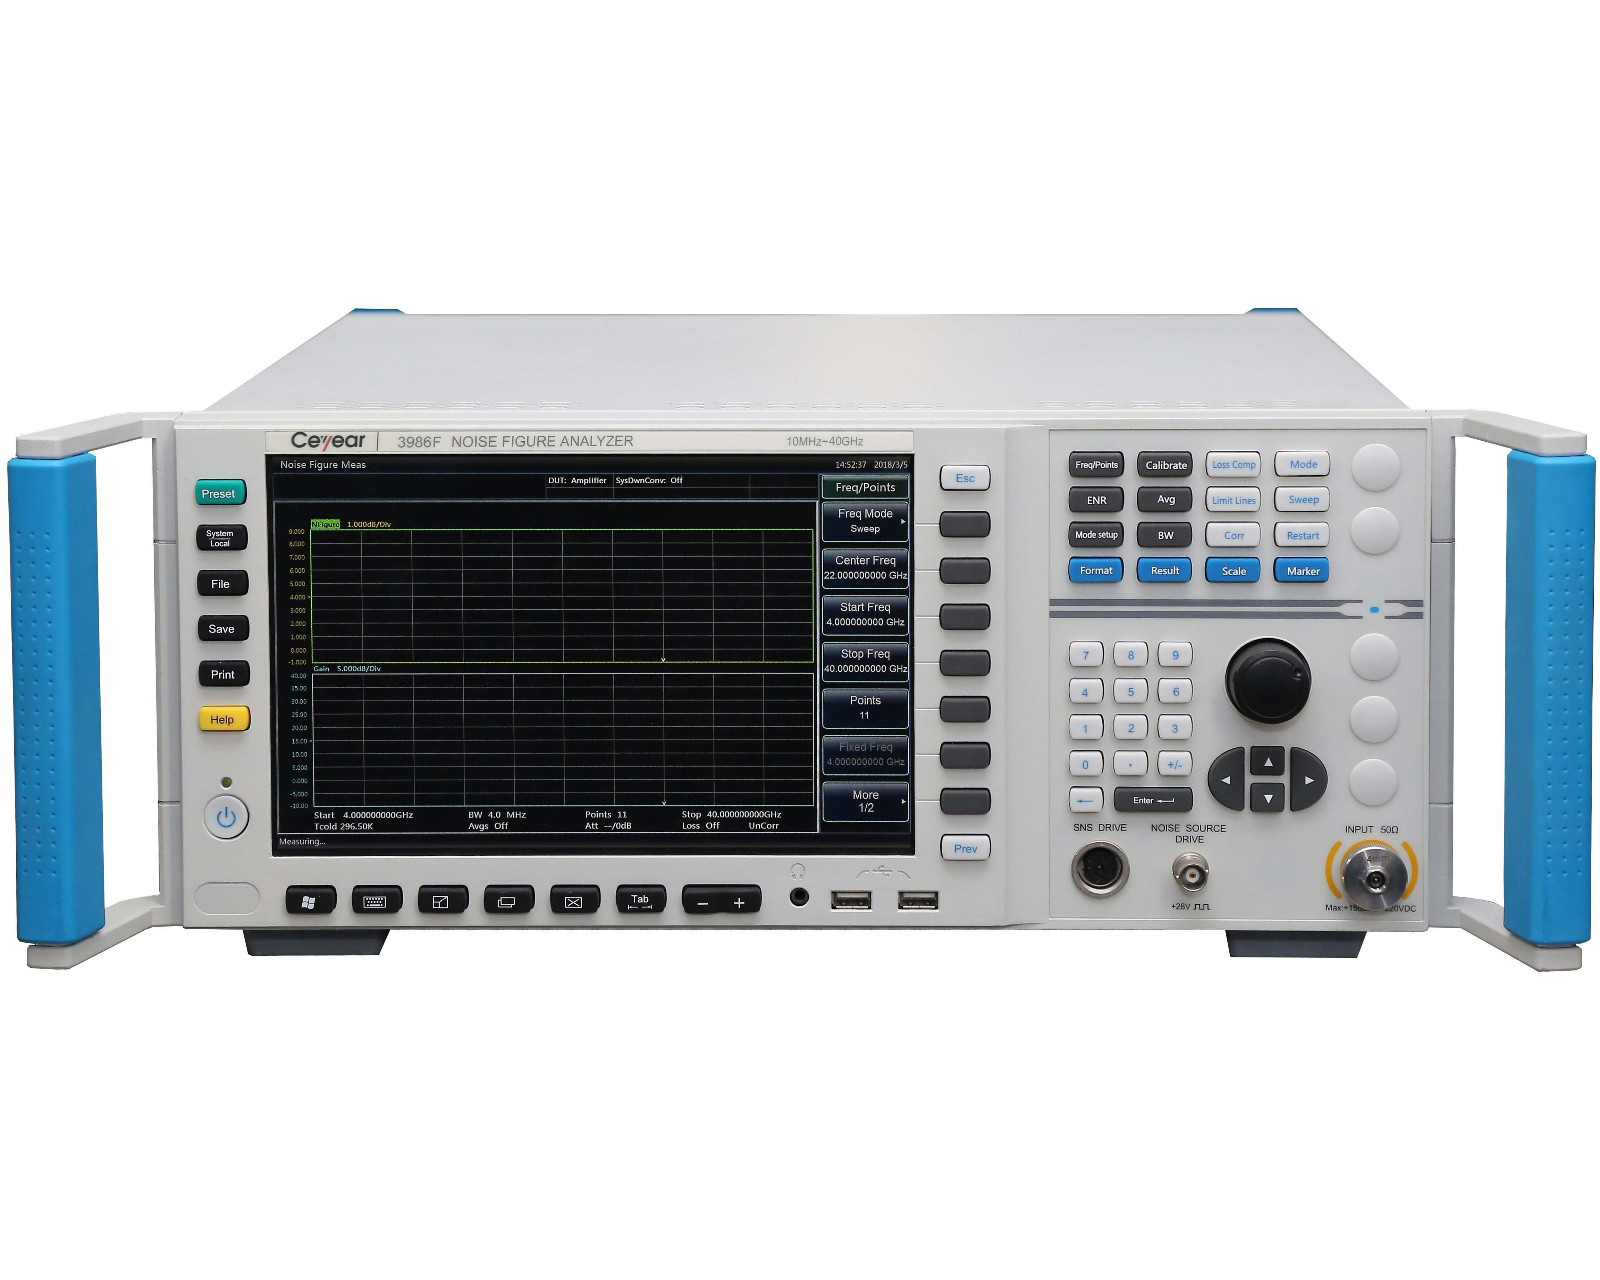 Анализатор коэффициента шумаCeyear серии 3986:3986A/D/E/F/Hс диапазоном частот от 10 МГц до 50 ГГц